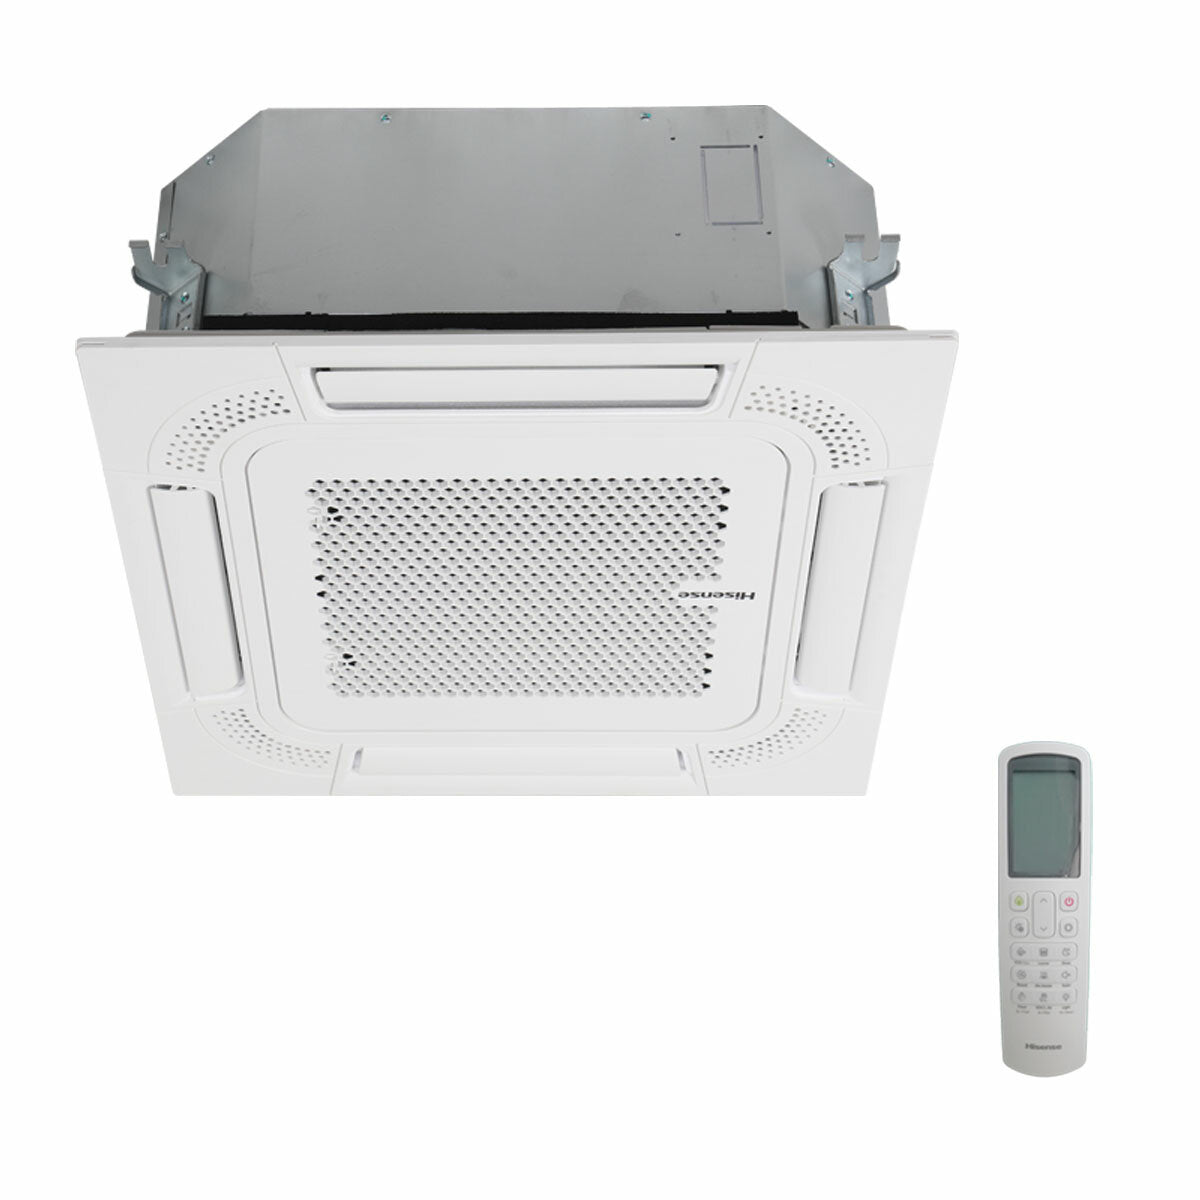 Hisense air conditioner Cassette ACT quadri split 9000+9000+18000+18000 BTU inverter A++ outdoor unit 10 kW